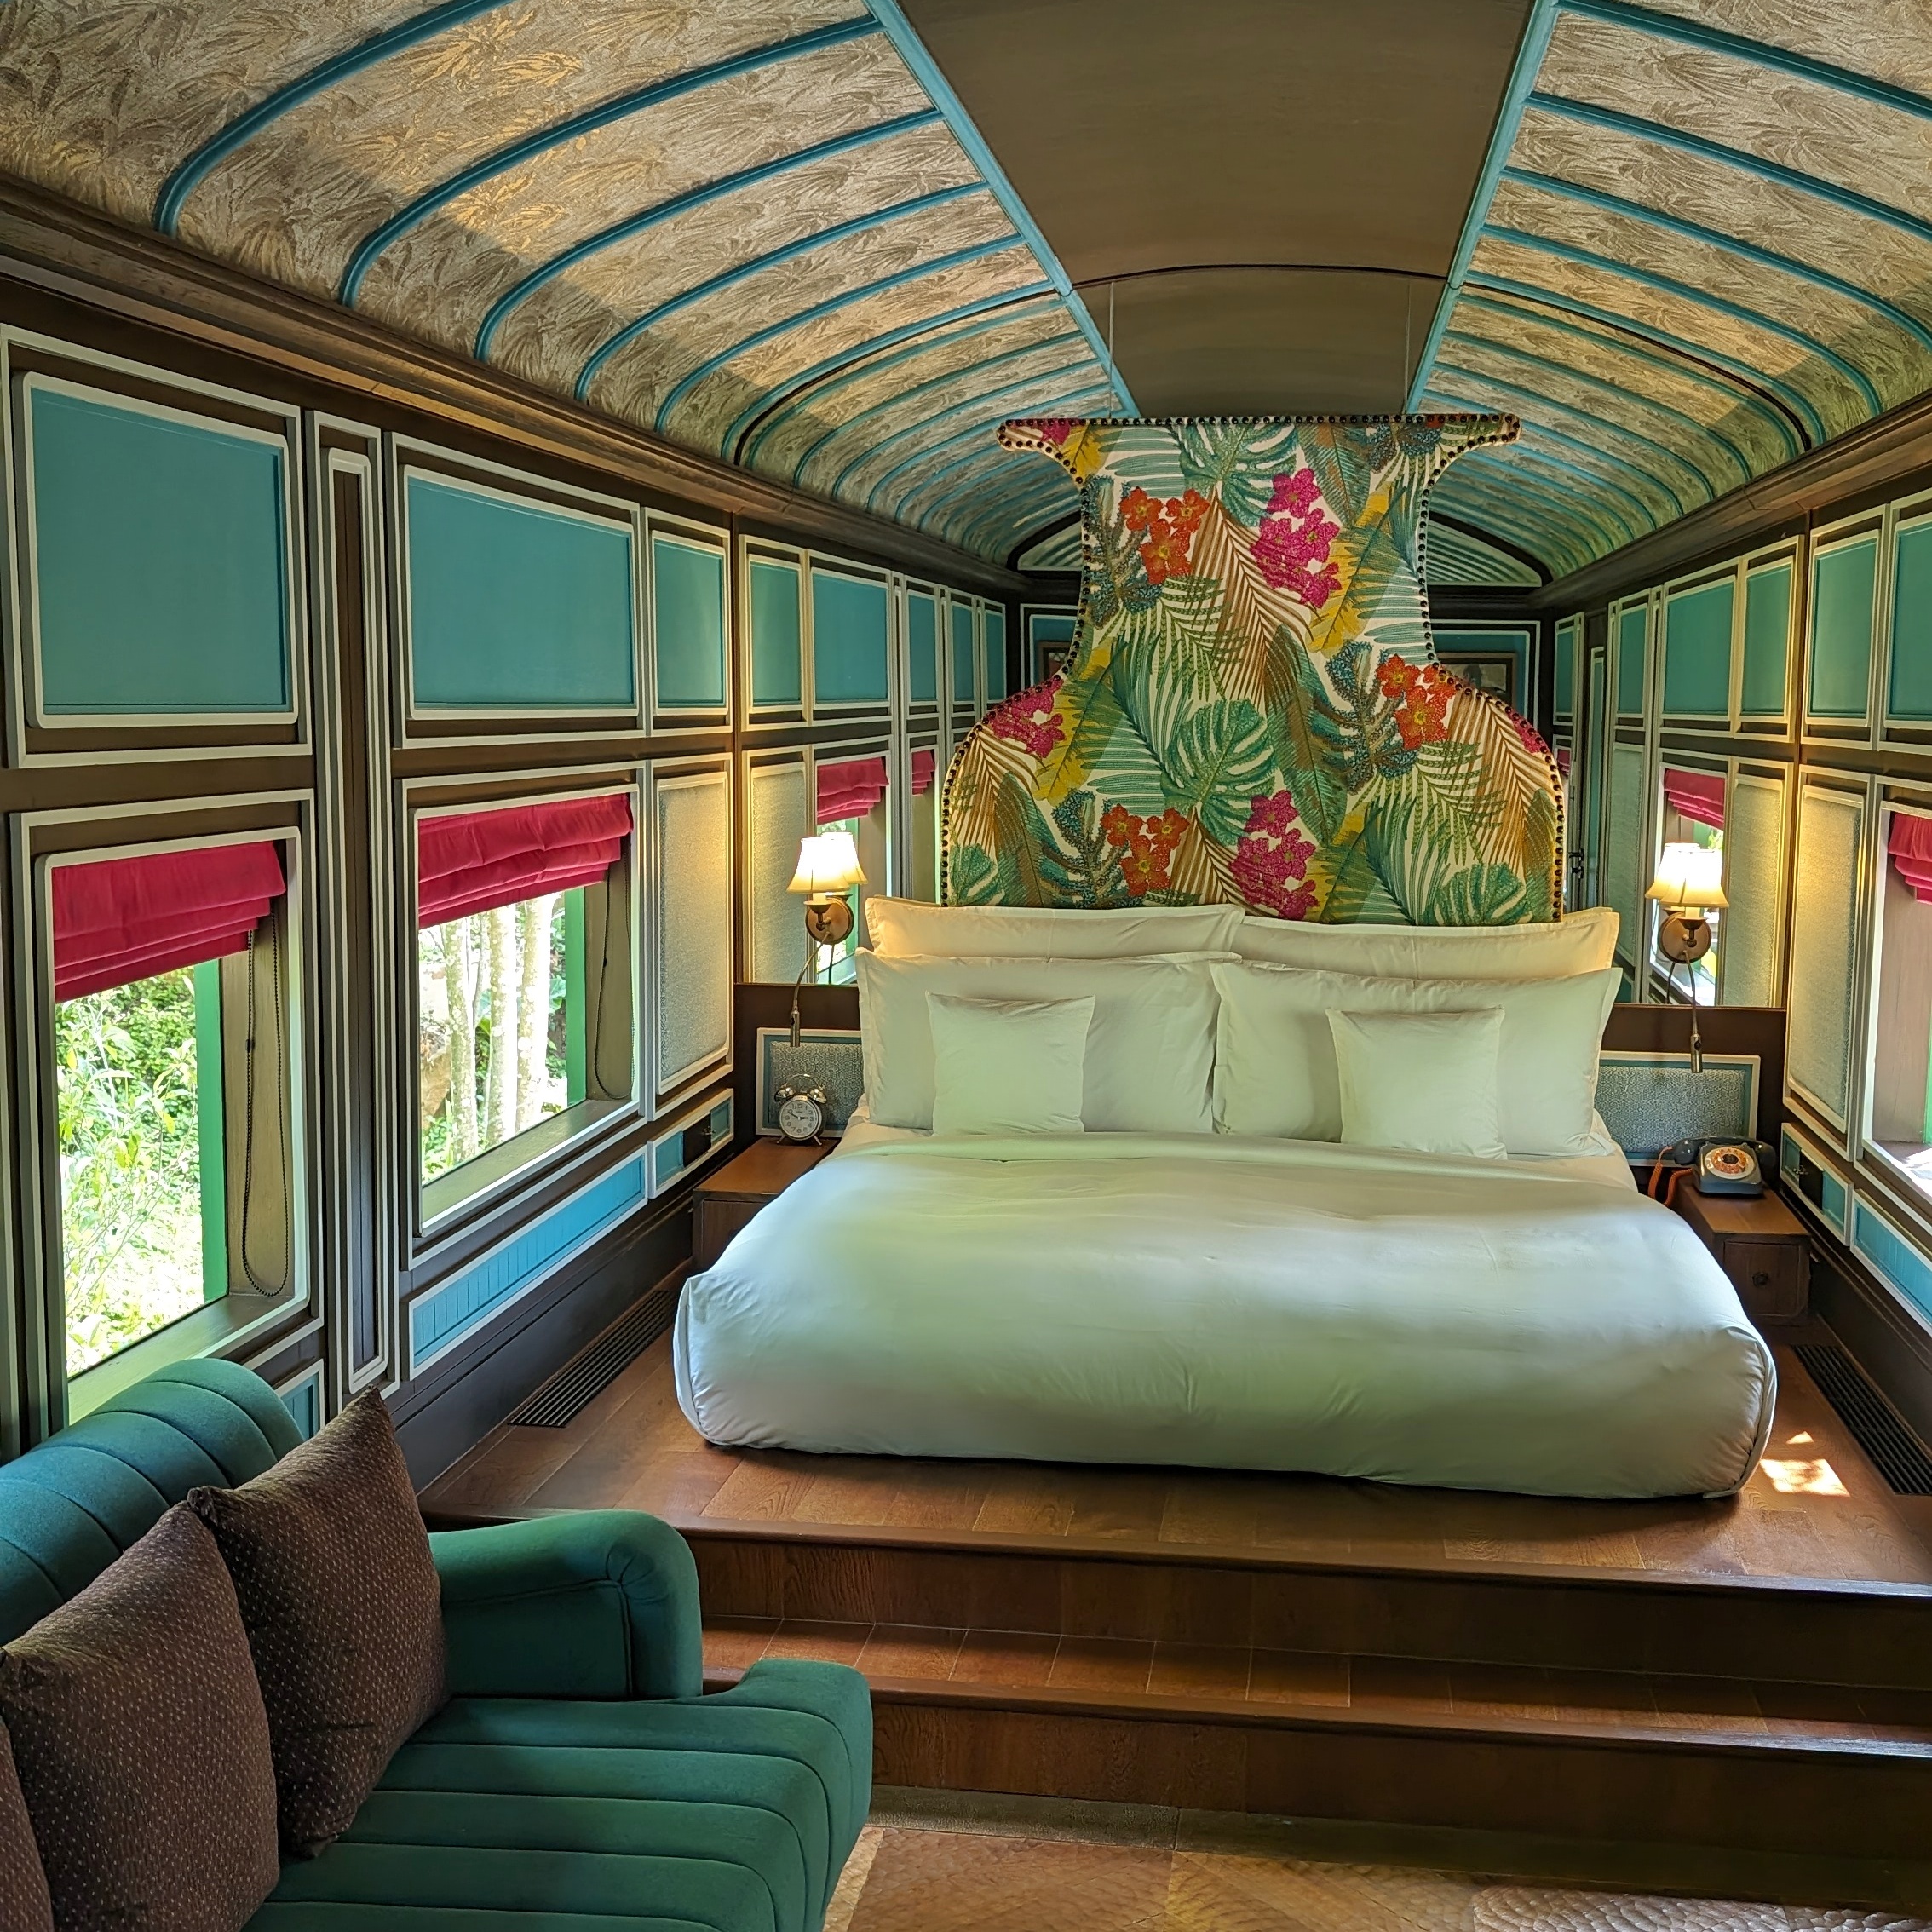 InterContinental Khao Yai Resort Heritage Railcar 1 Bedroom Villa Bedroom